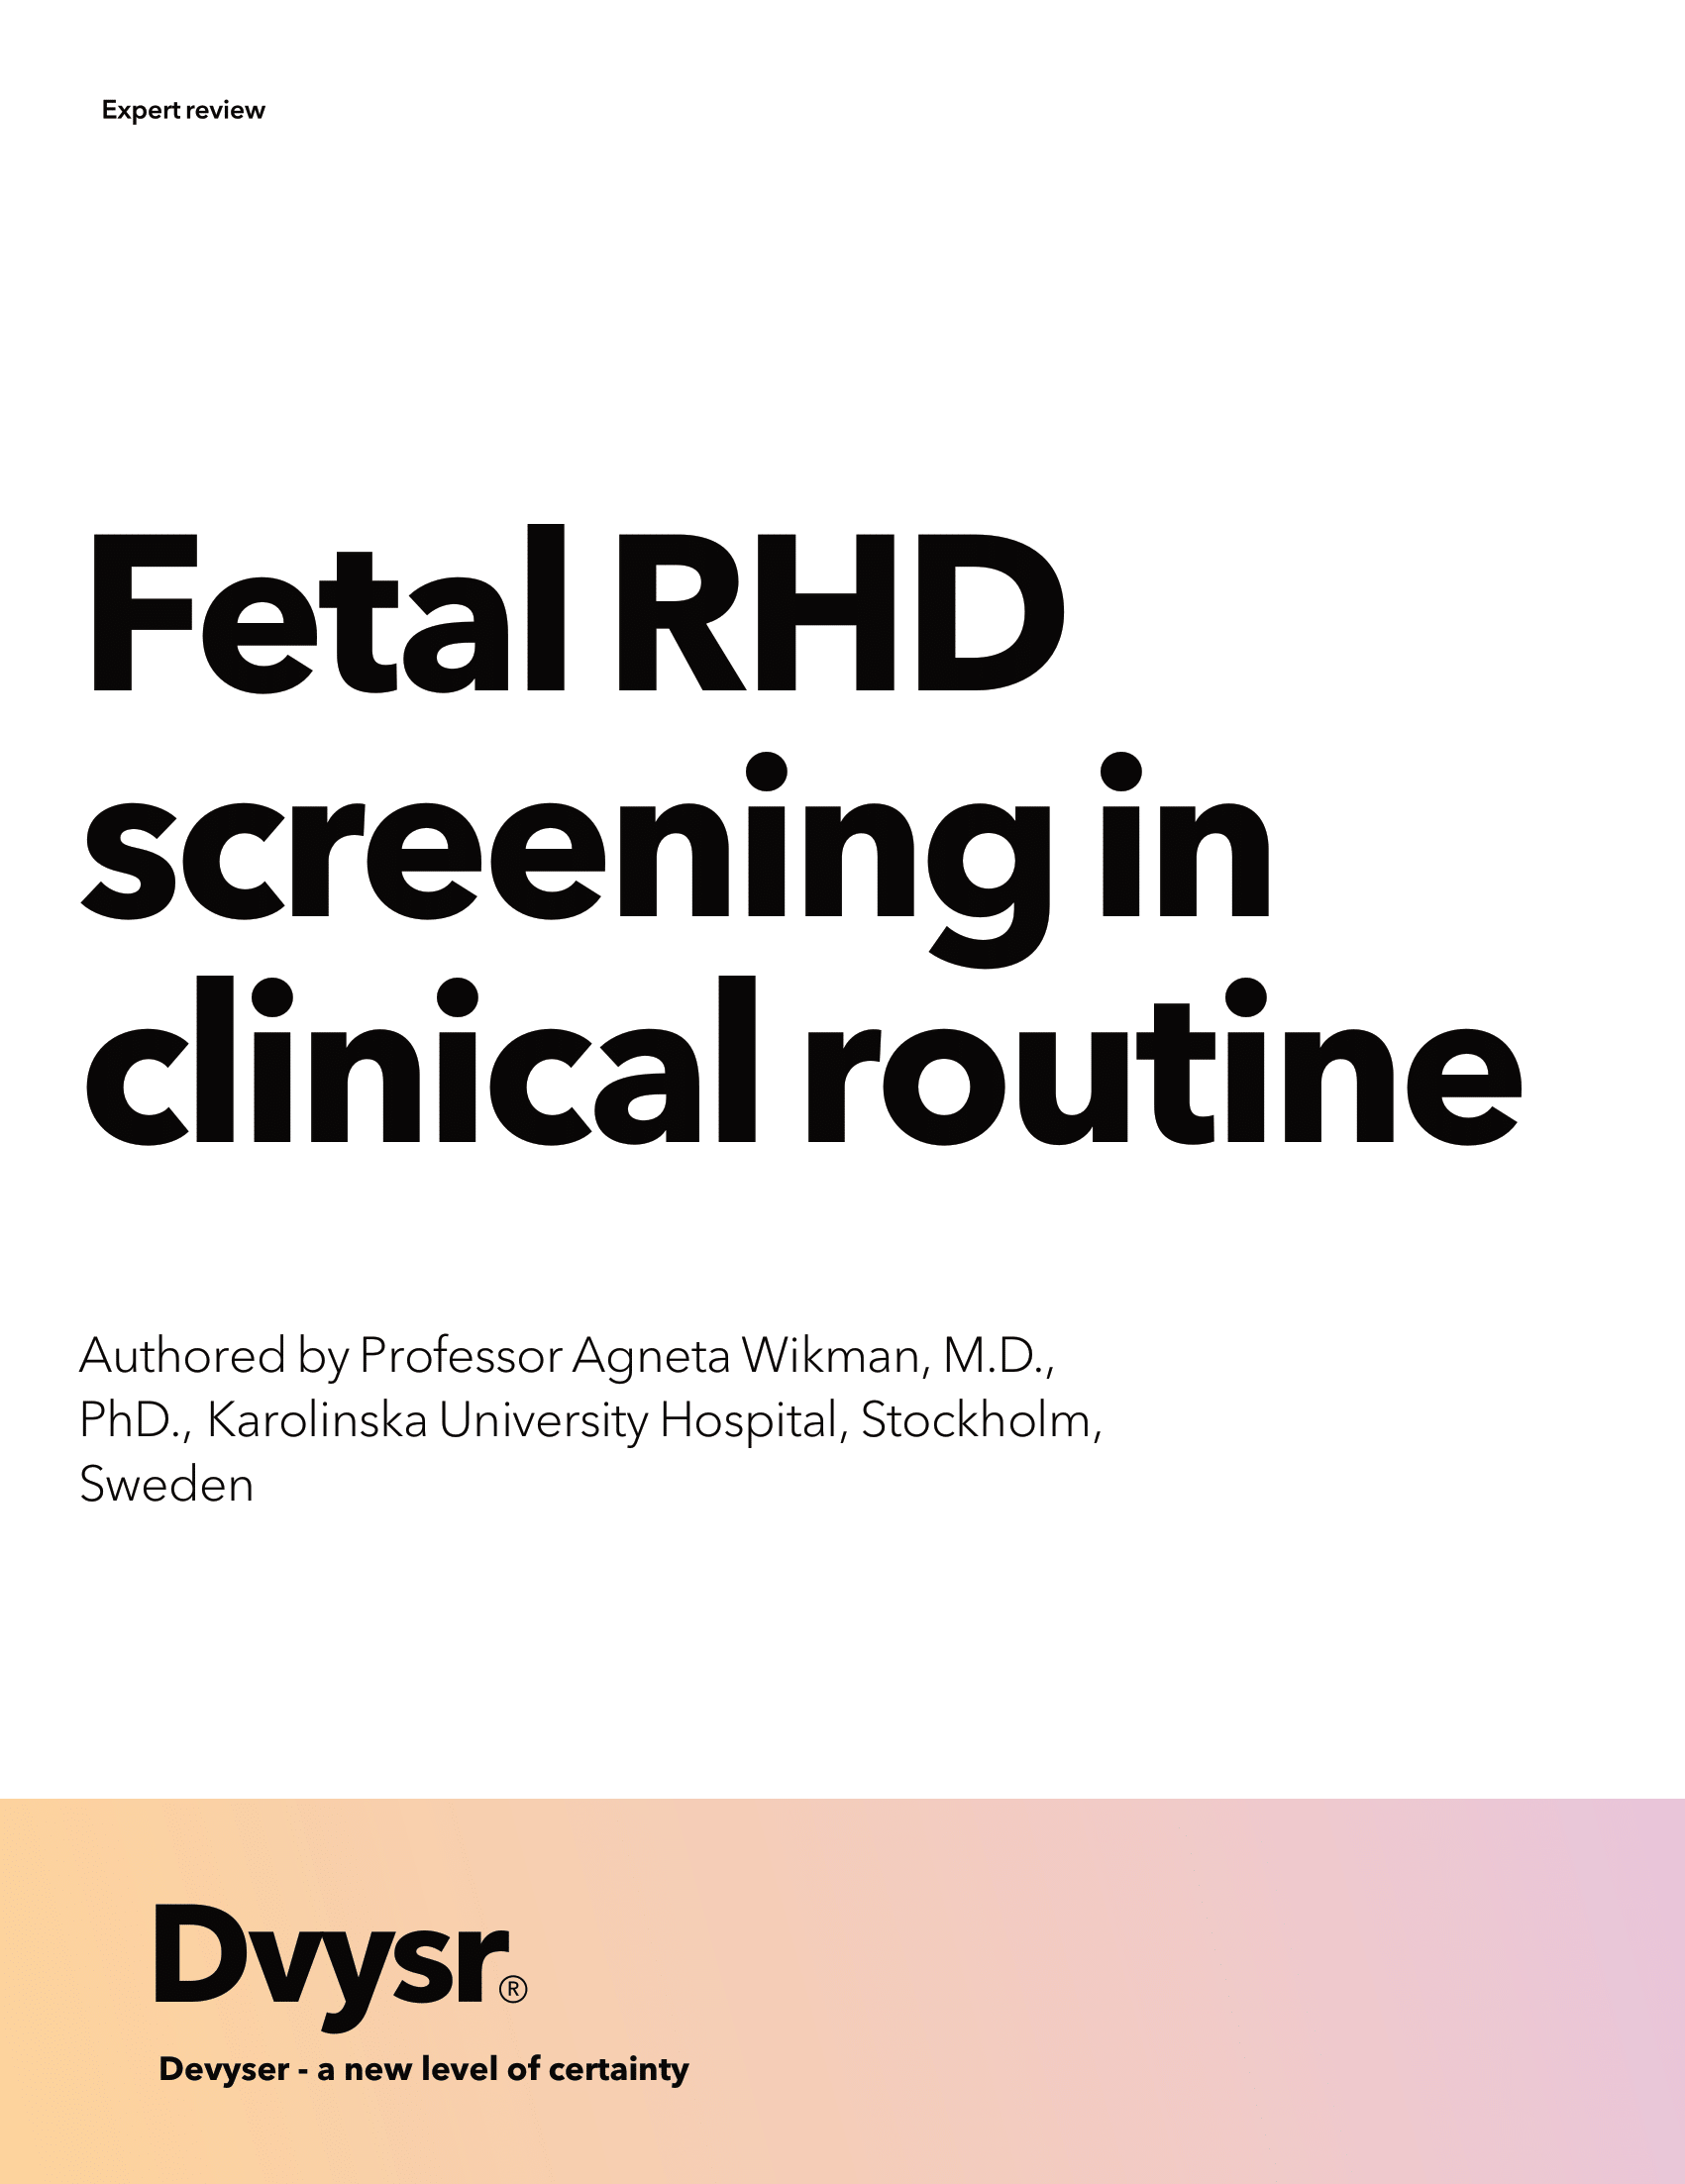 Fetal RHD screening in clinical routine